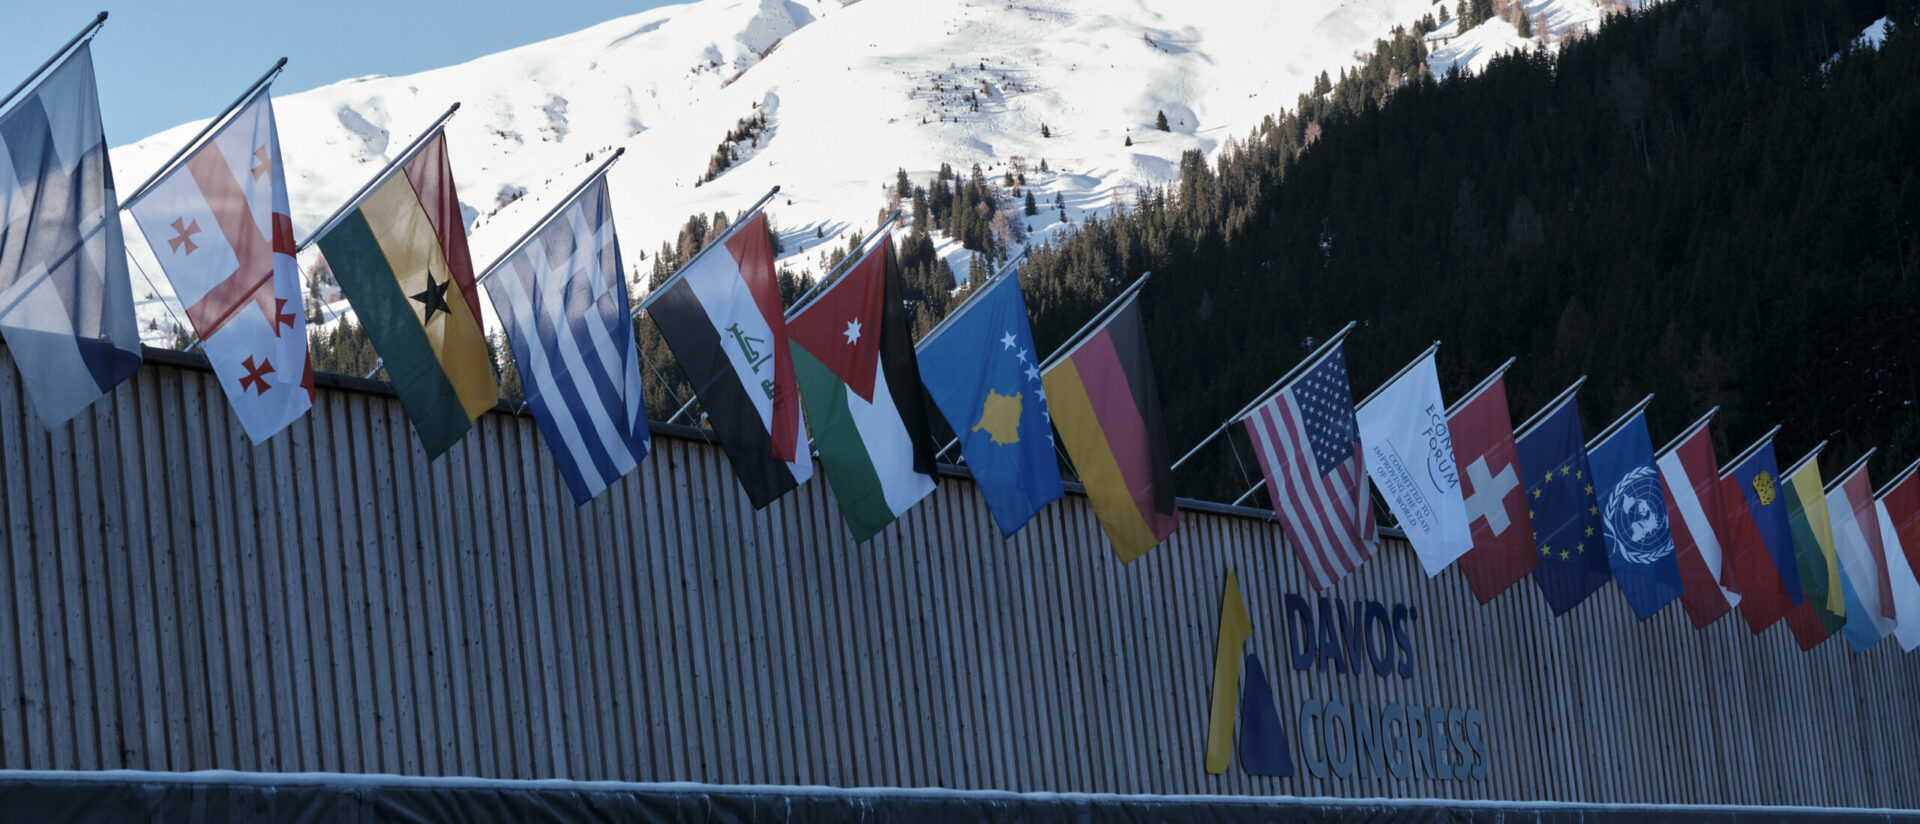 Le Forum économique mondial réunit les dirigeants mondiaux à Davos | © ΝΕΑ ΔΗΜΟΚΡΑΤΙΑ/Flickr/CC BY-NC 2.0